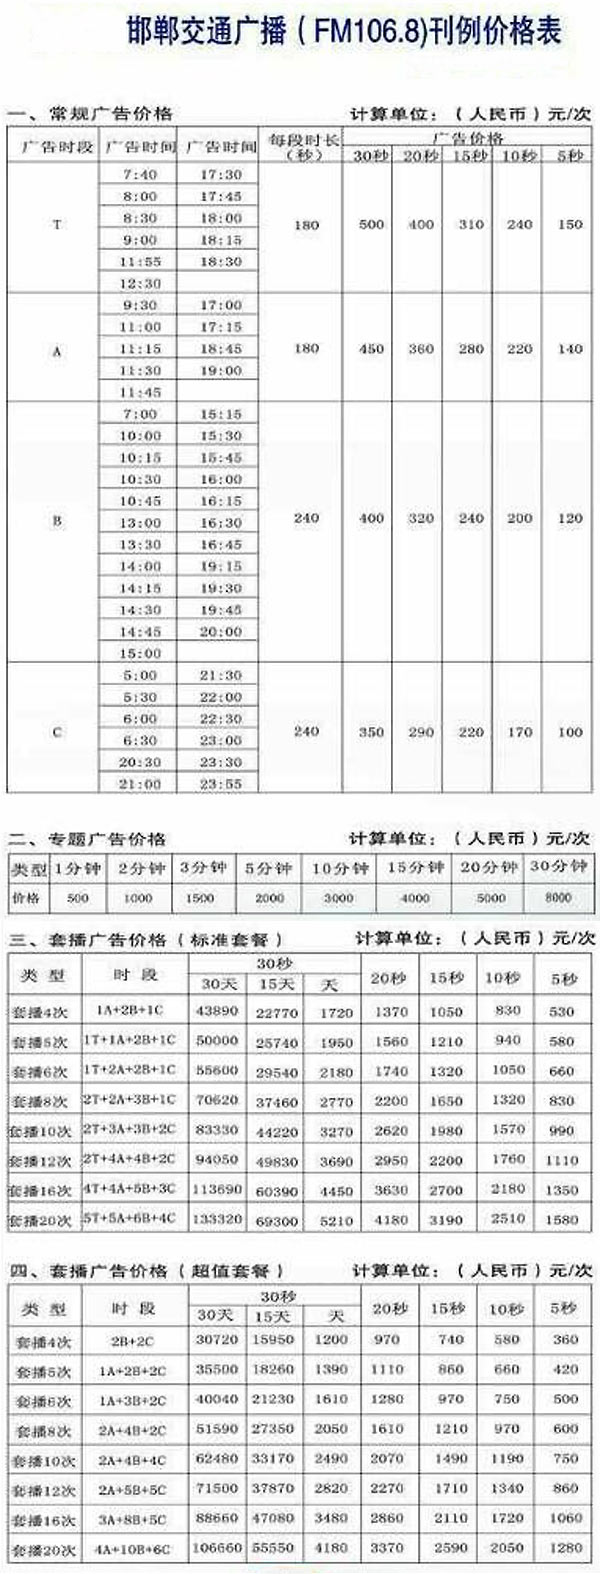 邯郸人民广播电台交通频道（FM106.8）2017年广告报价